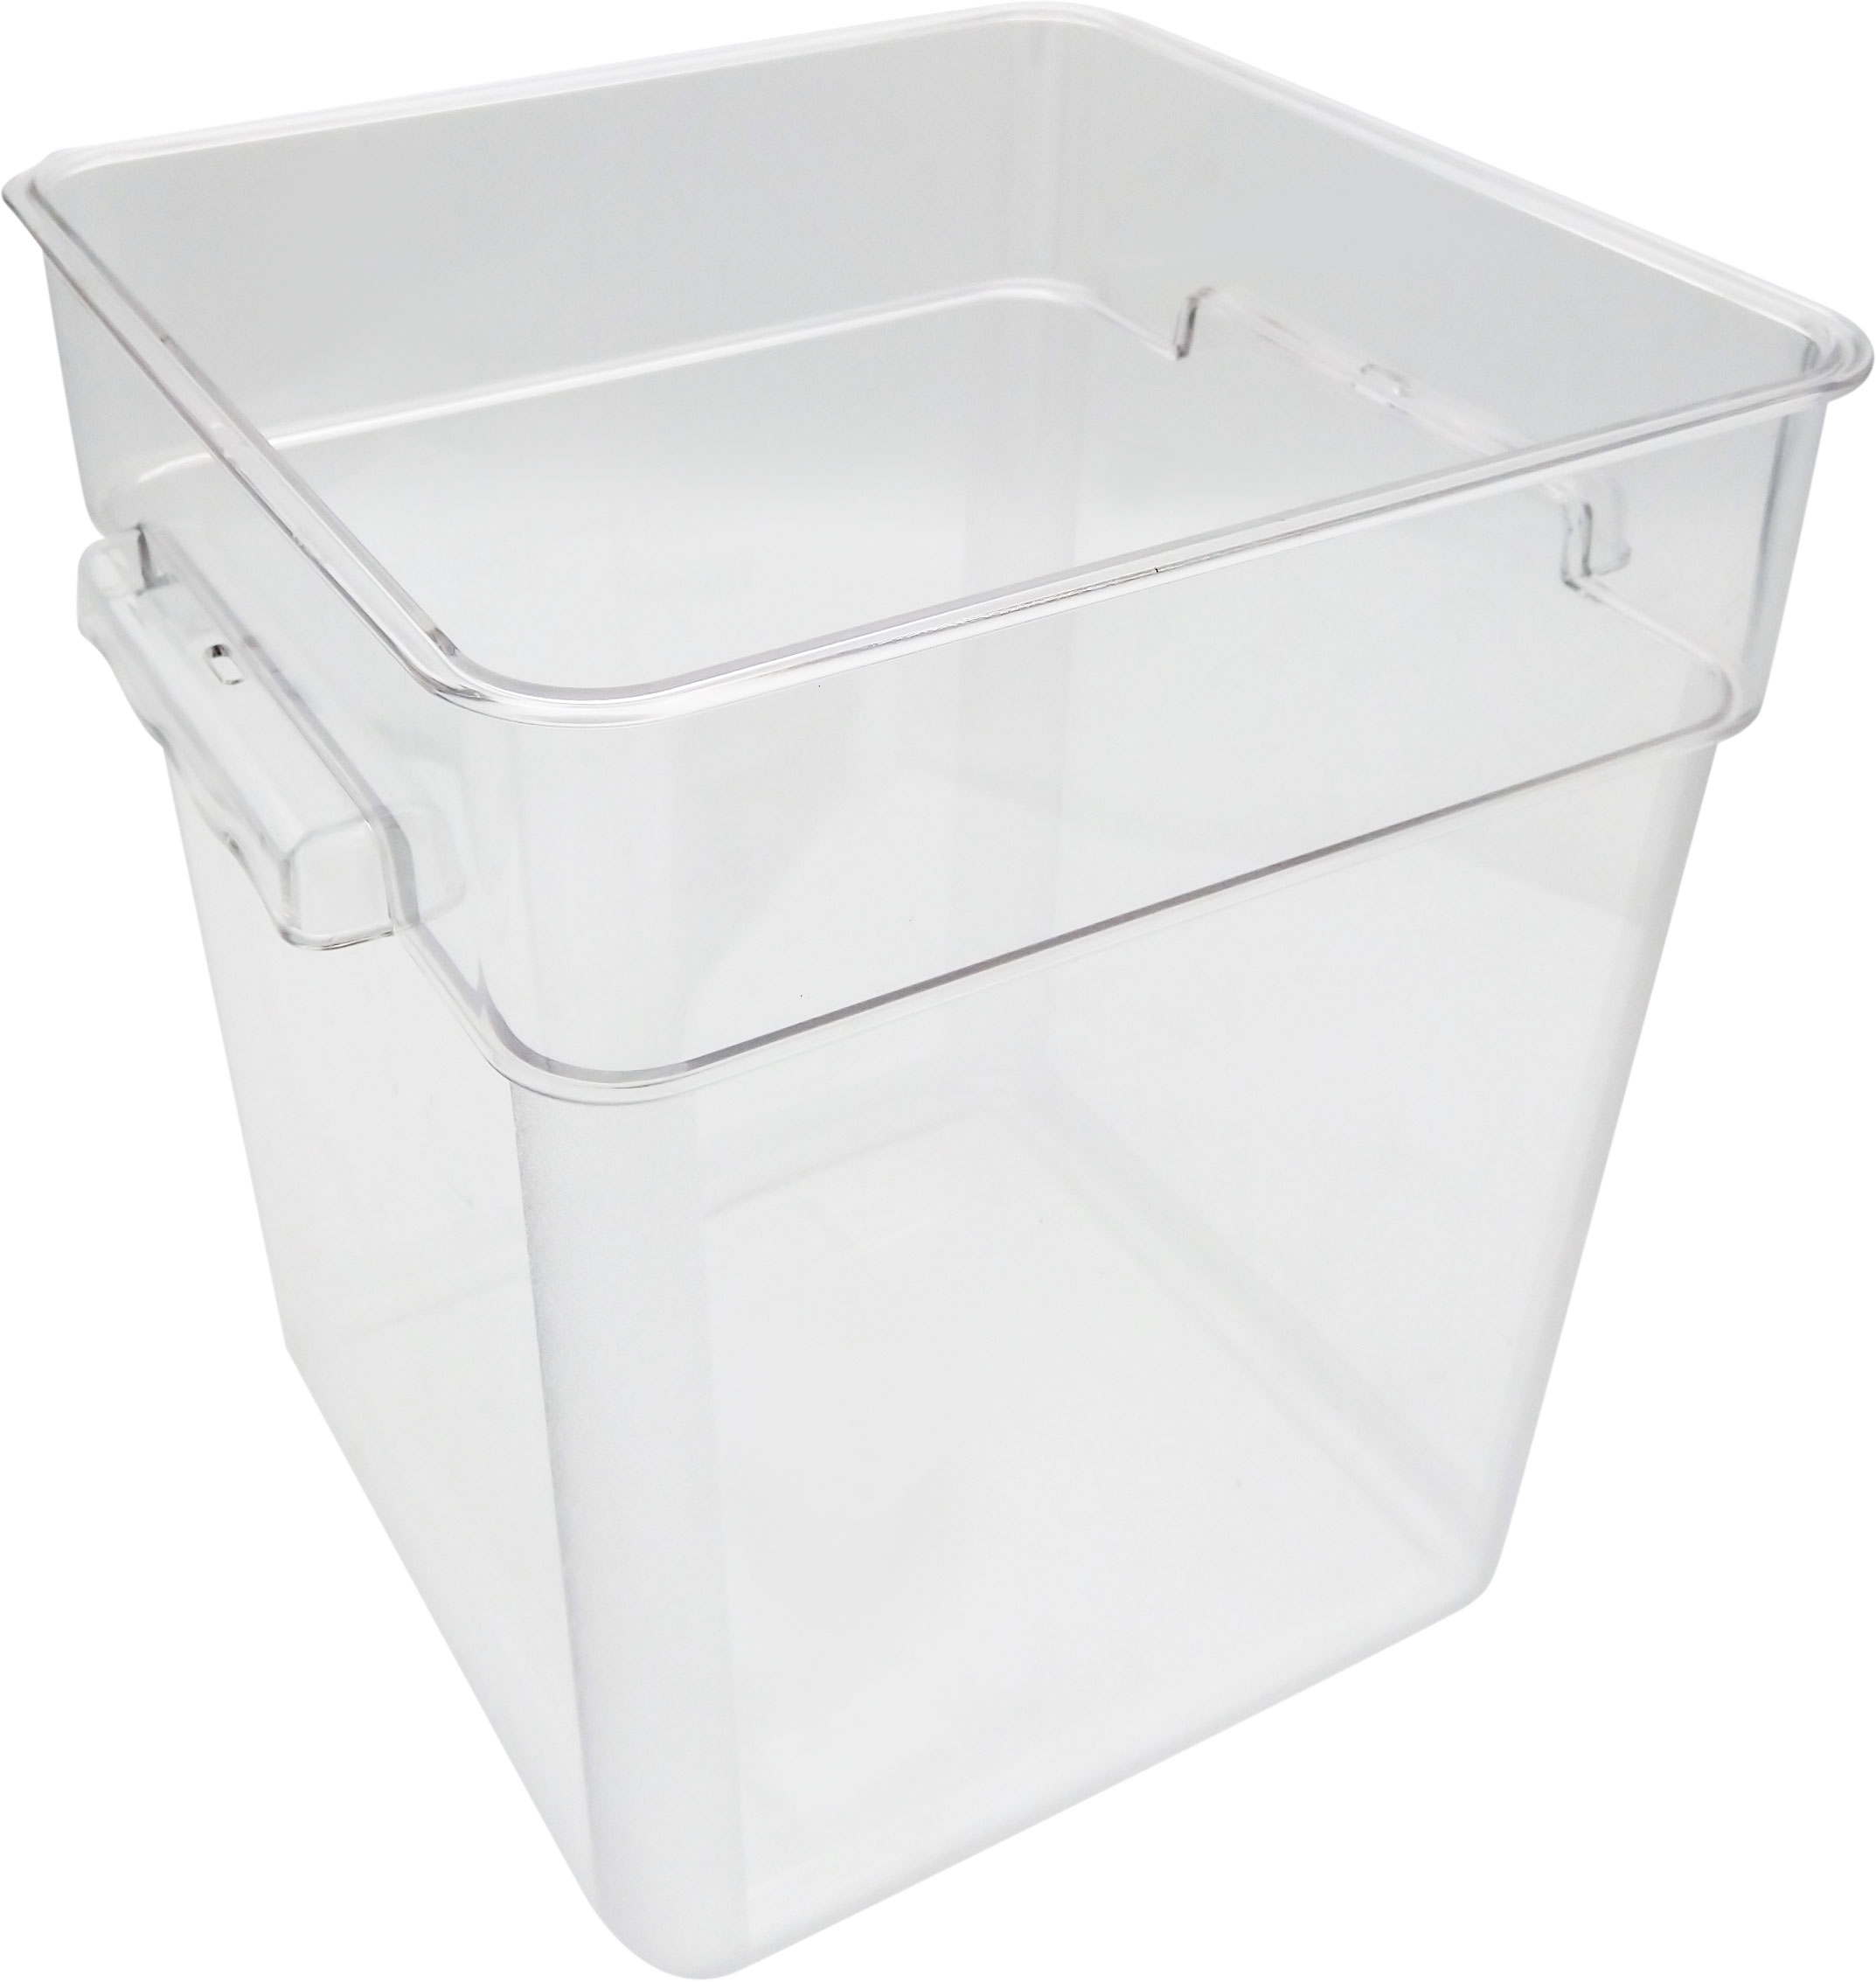 Wartmann 1507 + Ziva OneTouch + 18 liter container package[tweedekans]